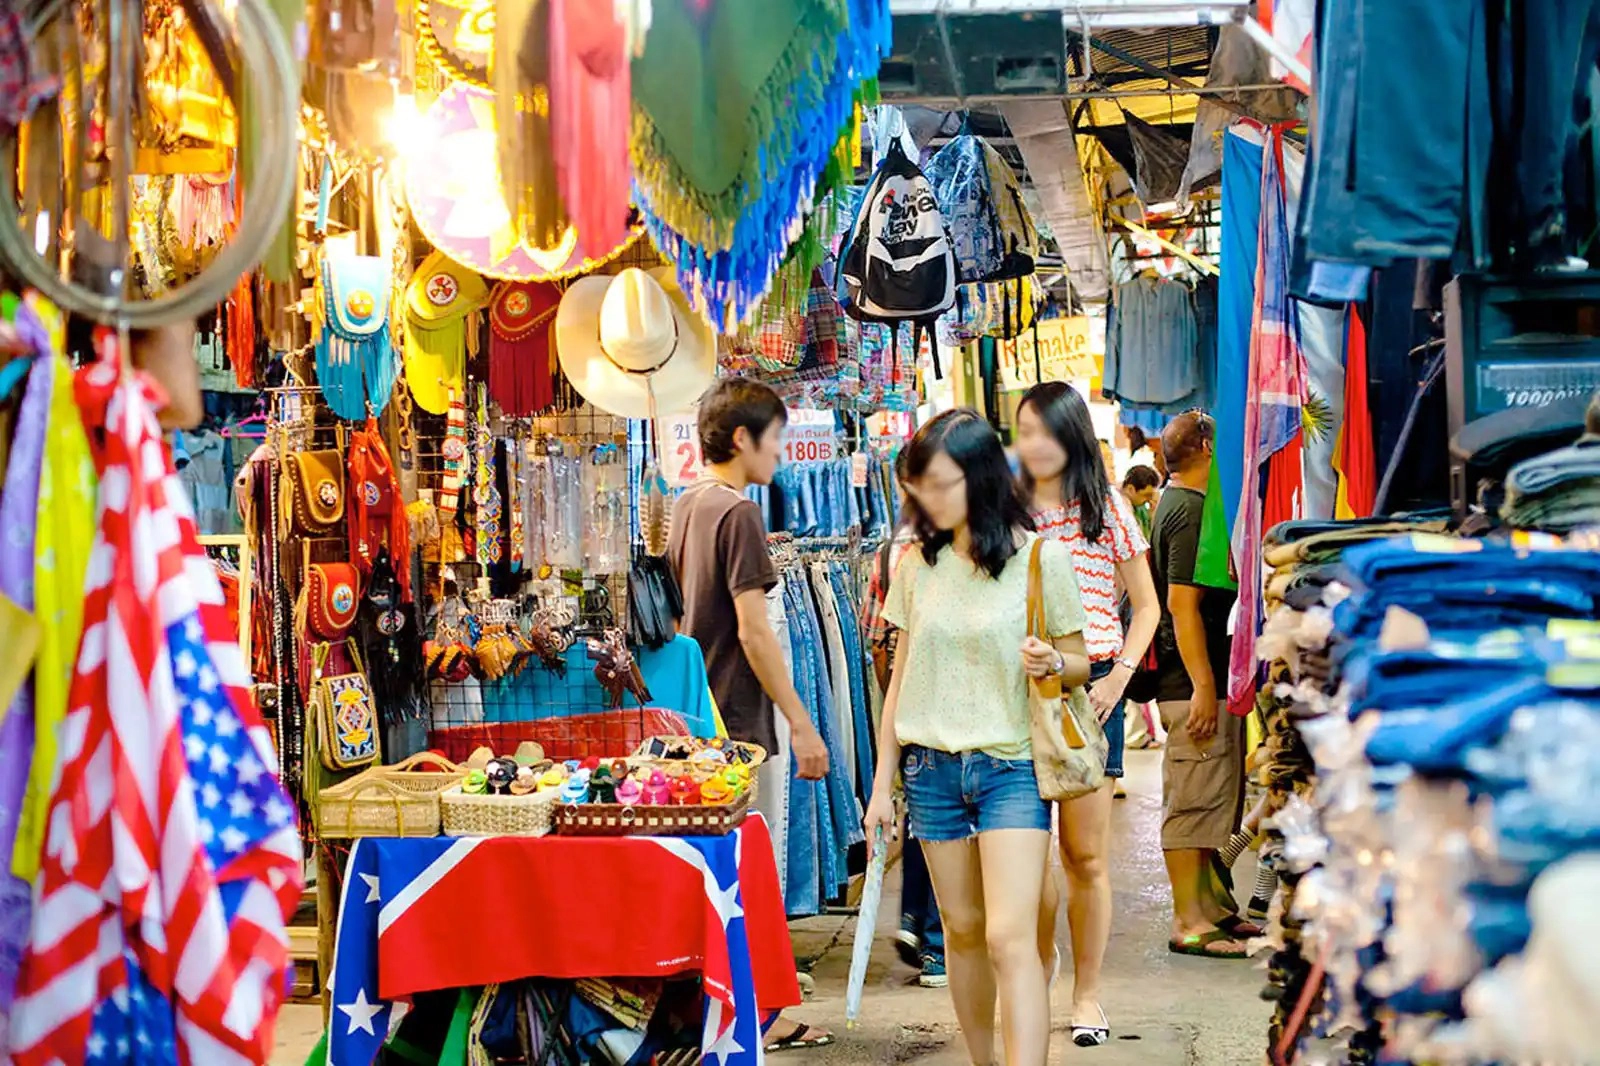 Du lịch Thái Lan - Khám phá chợ trời Chatuchak